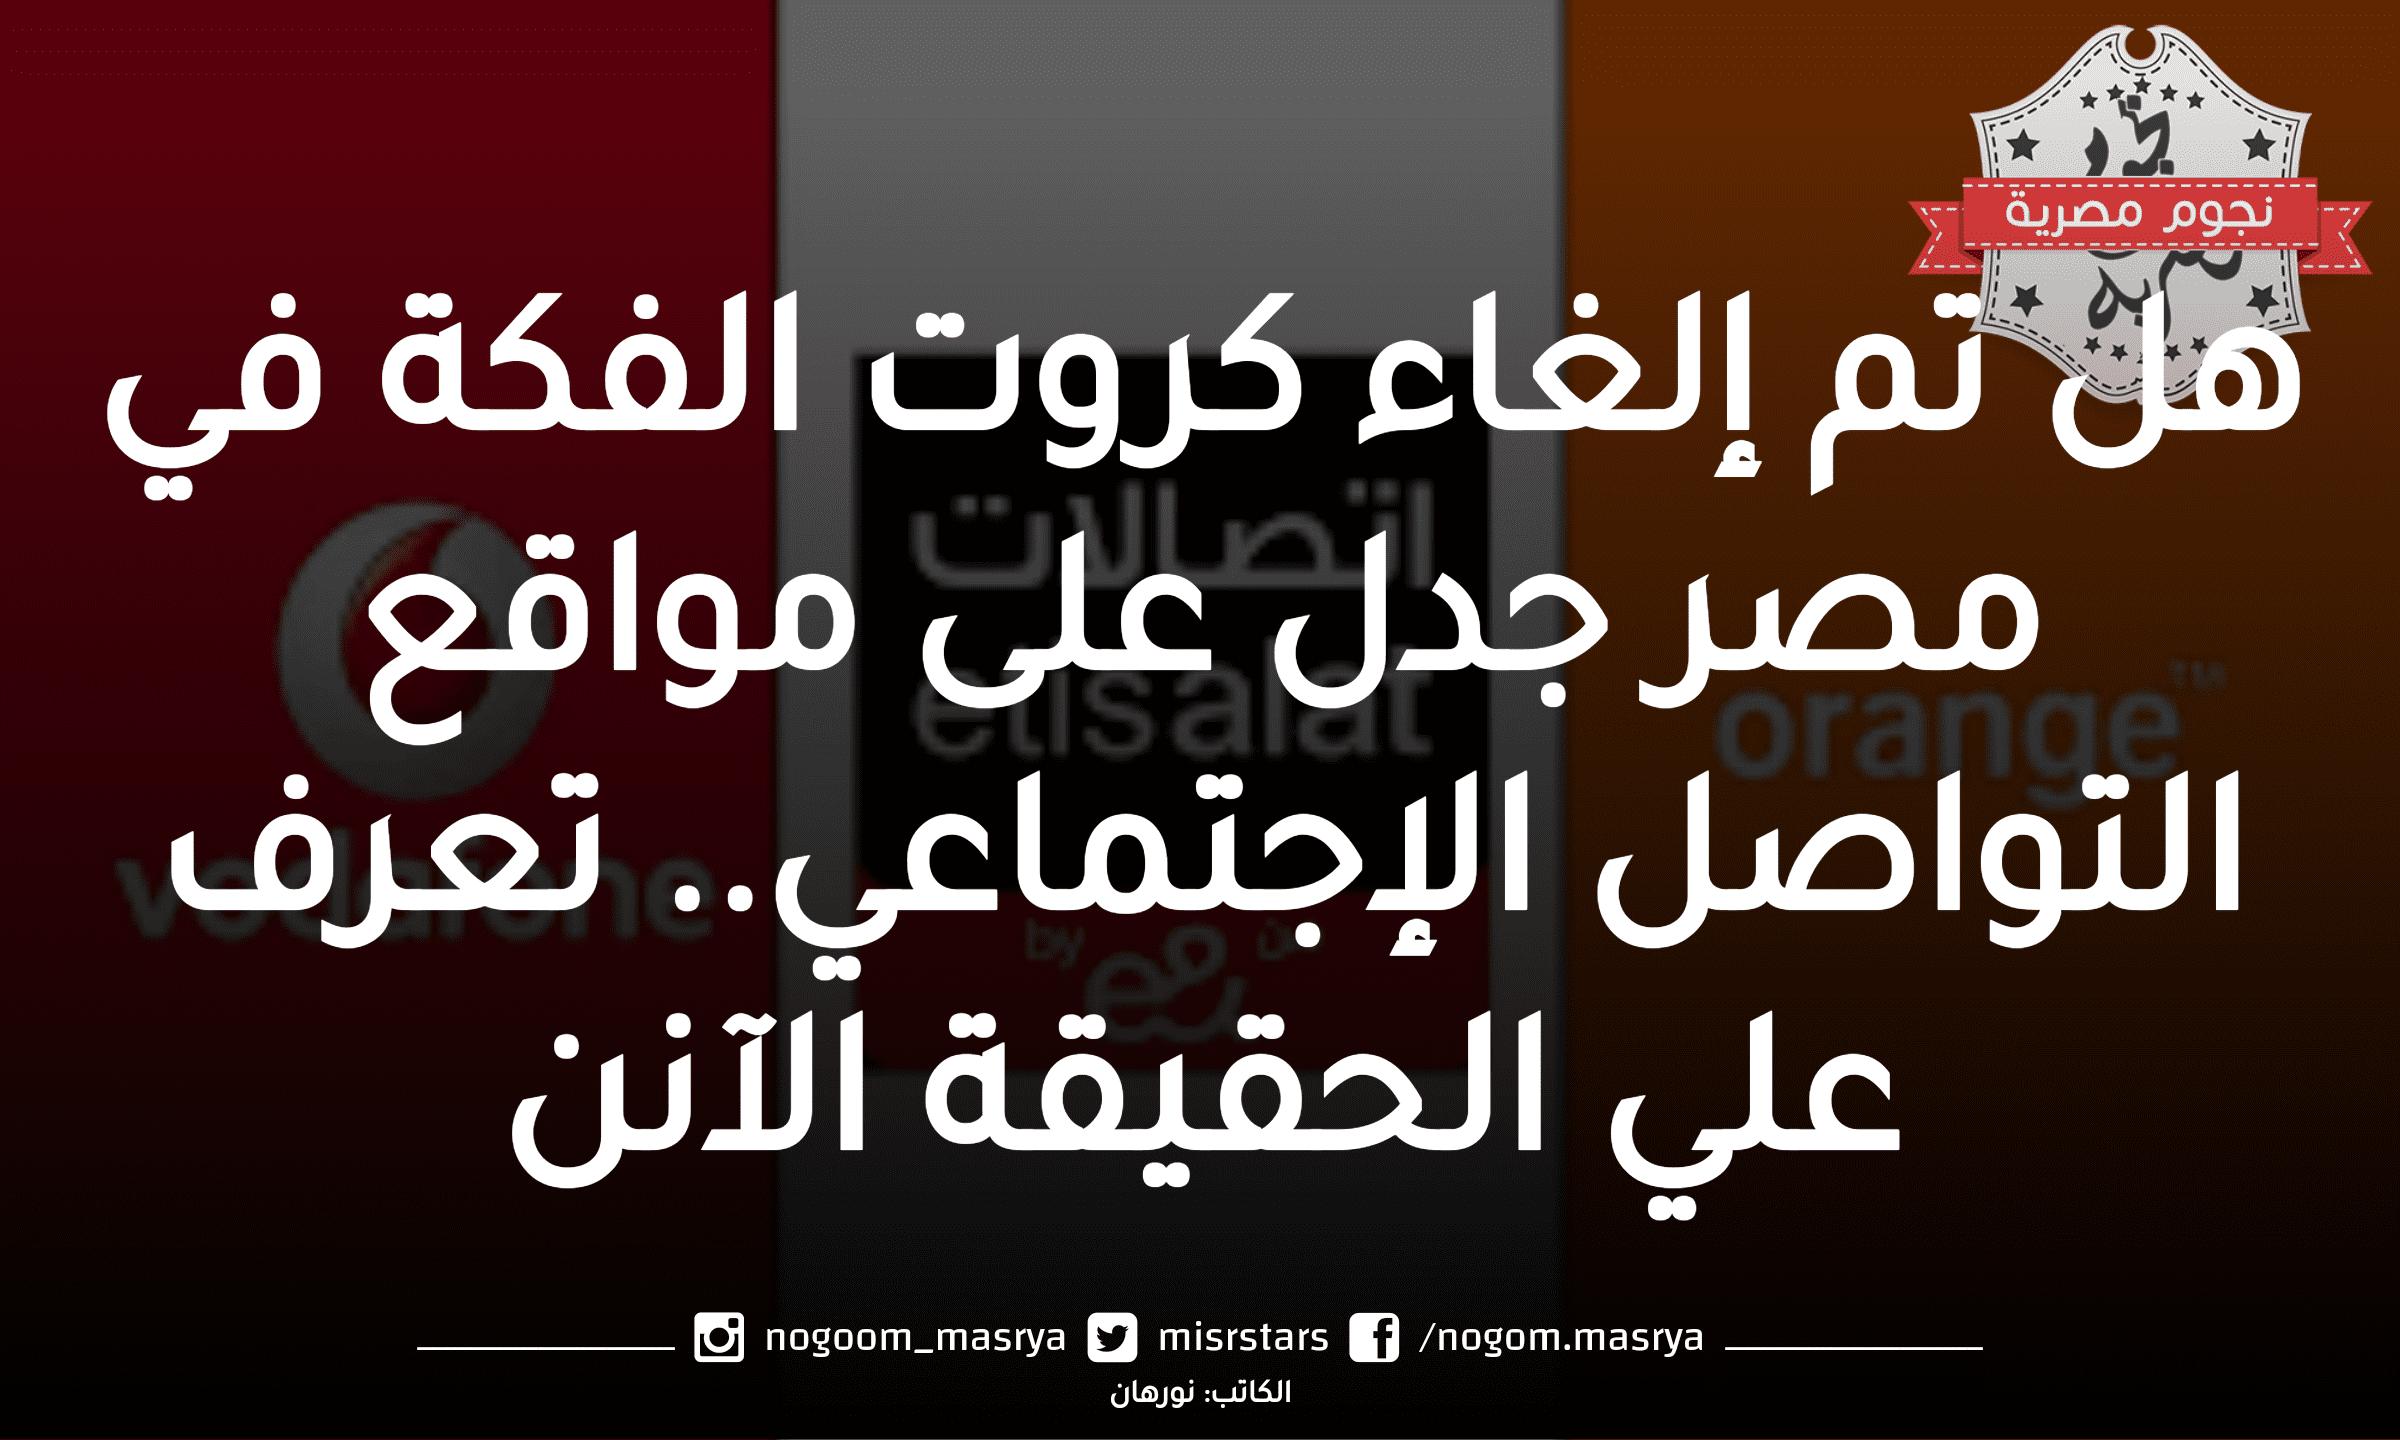 إلغاء كروت الفكة في مصر جدل على مواقع التواصل الاجتماعي.. تعرف على الحقيقة الآن